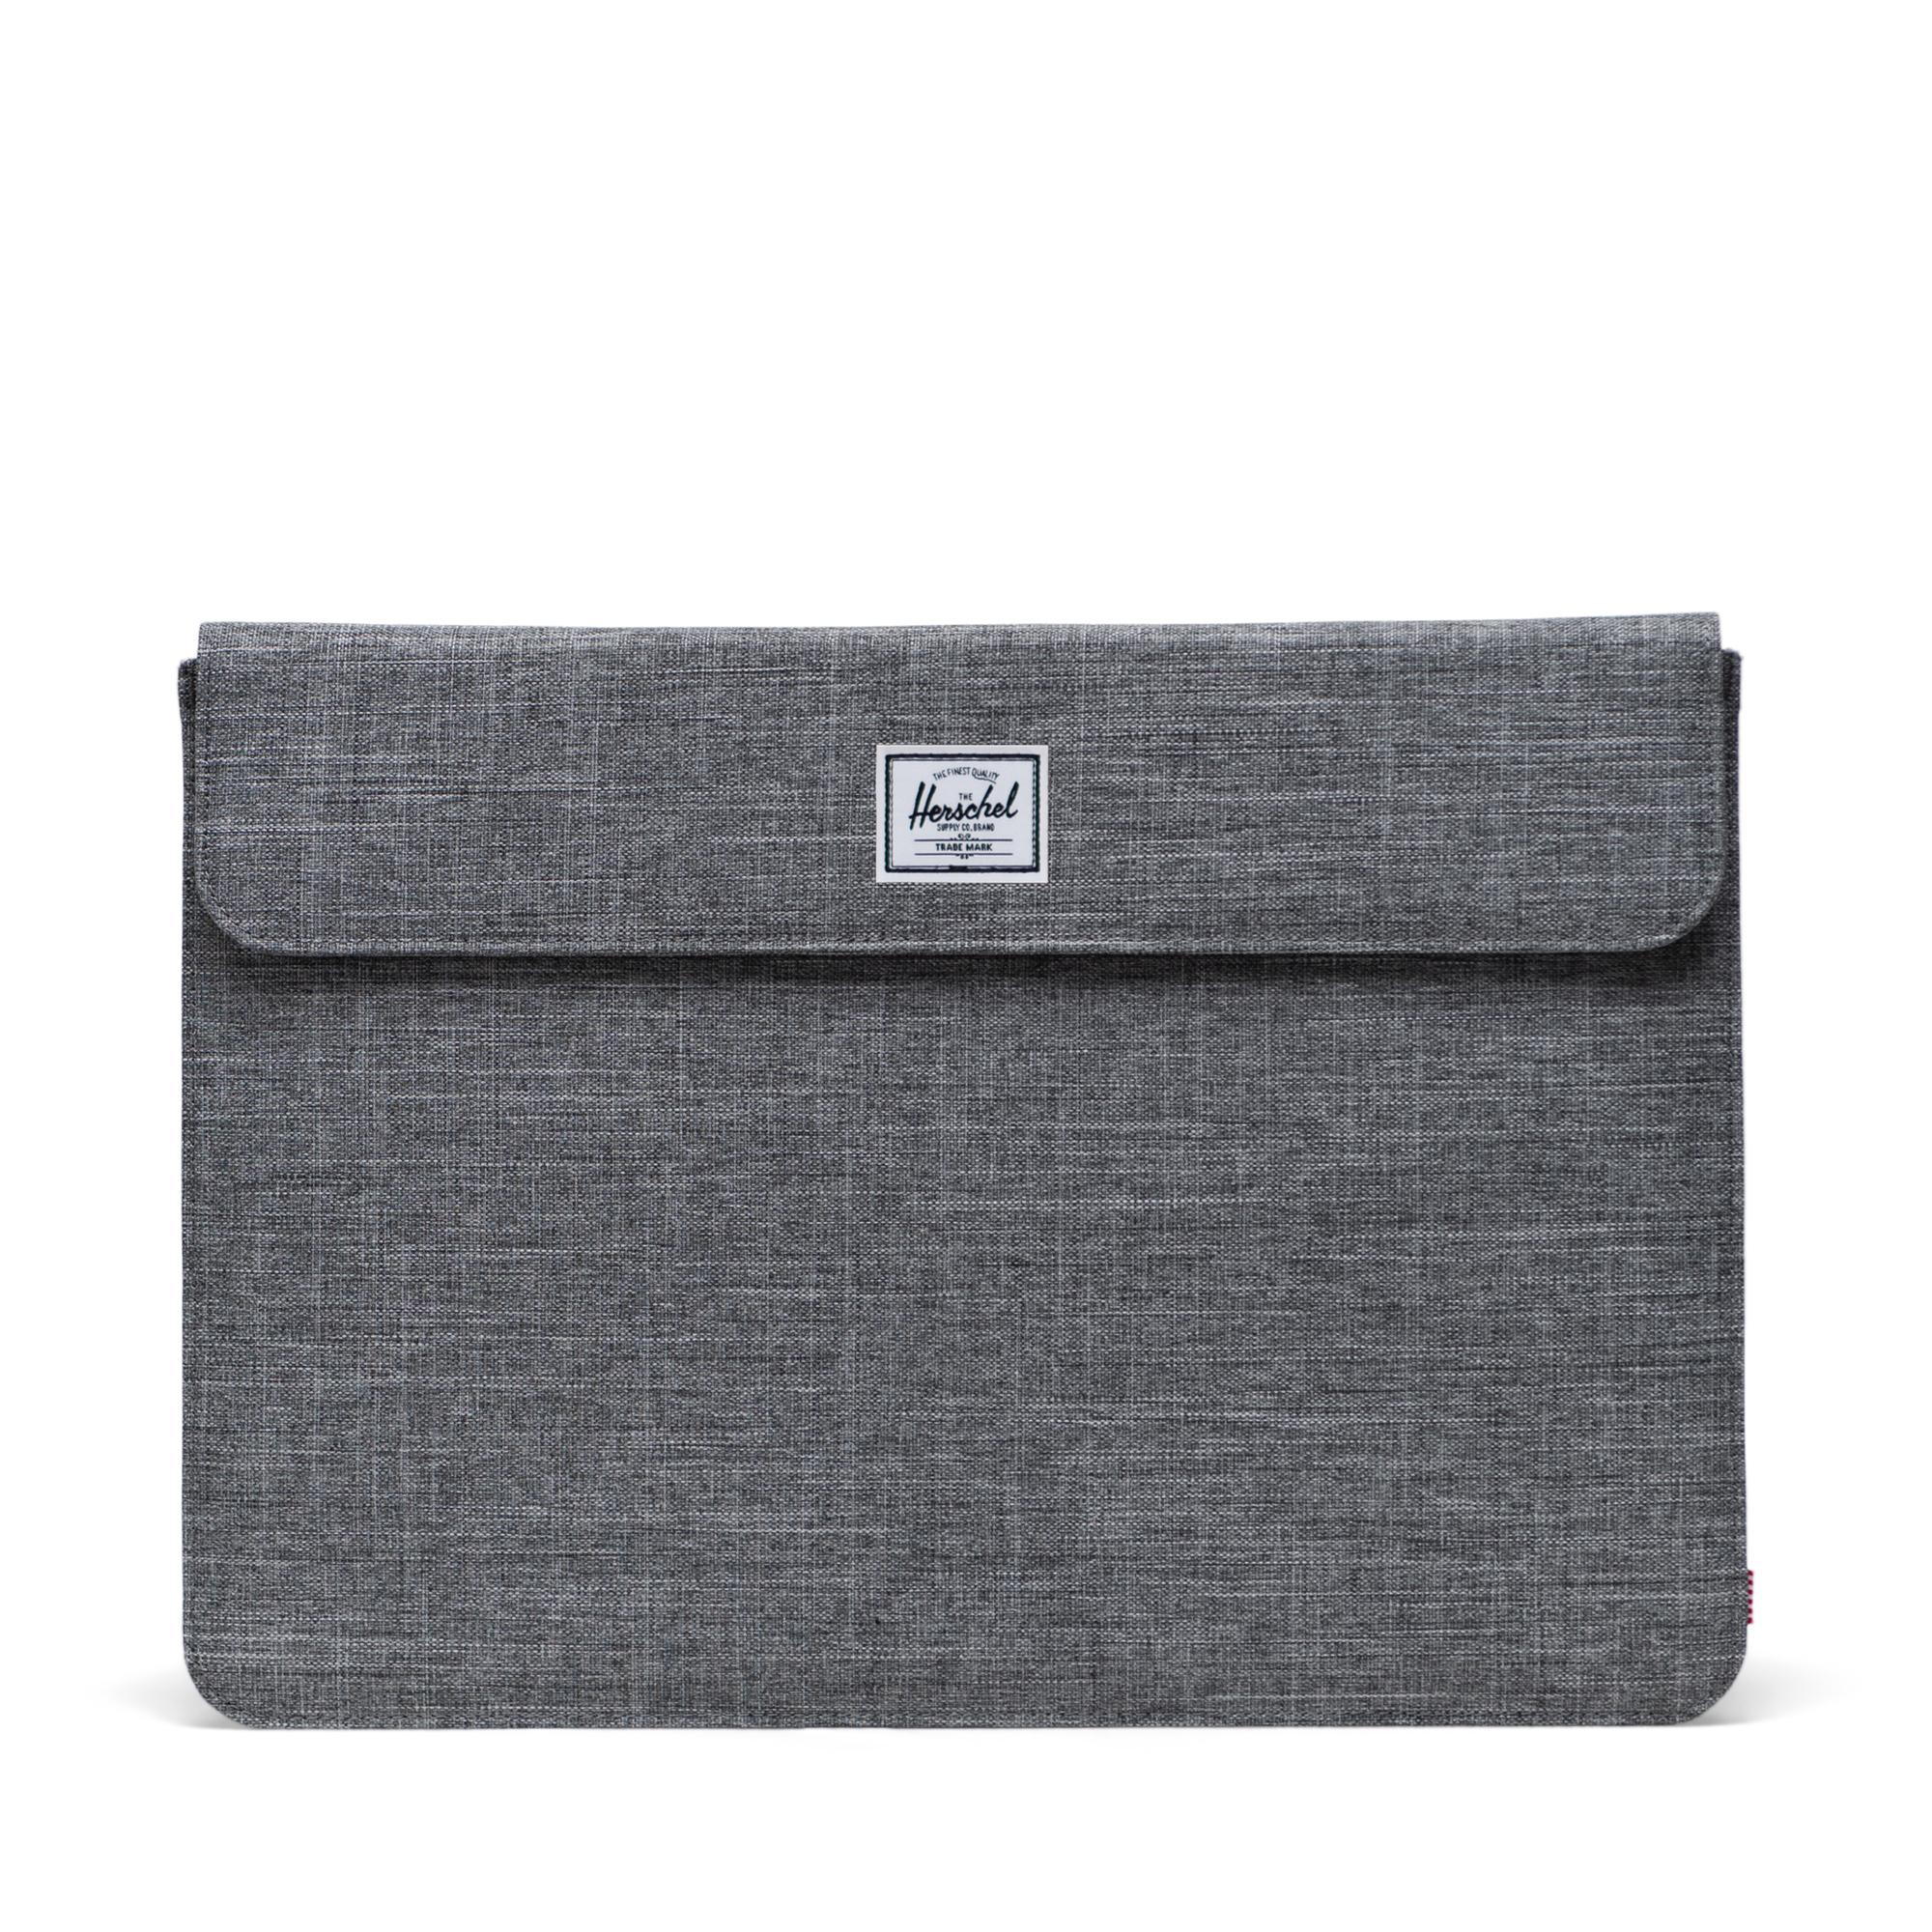 Spokane Laptop Sleeve 15-16 Inch | Herschel Supply Company